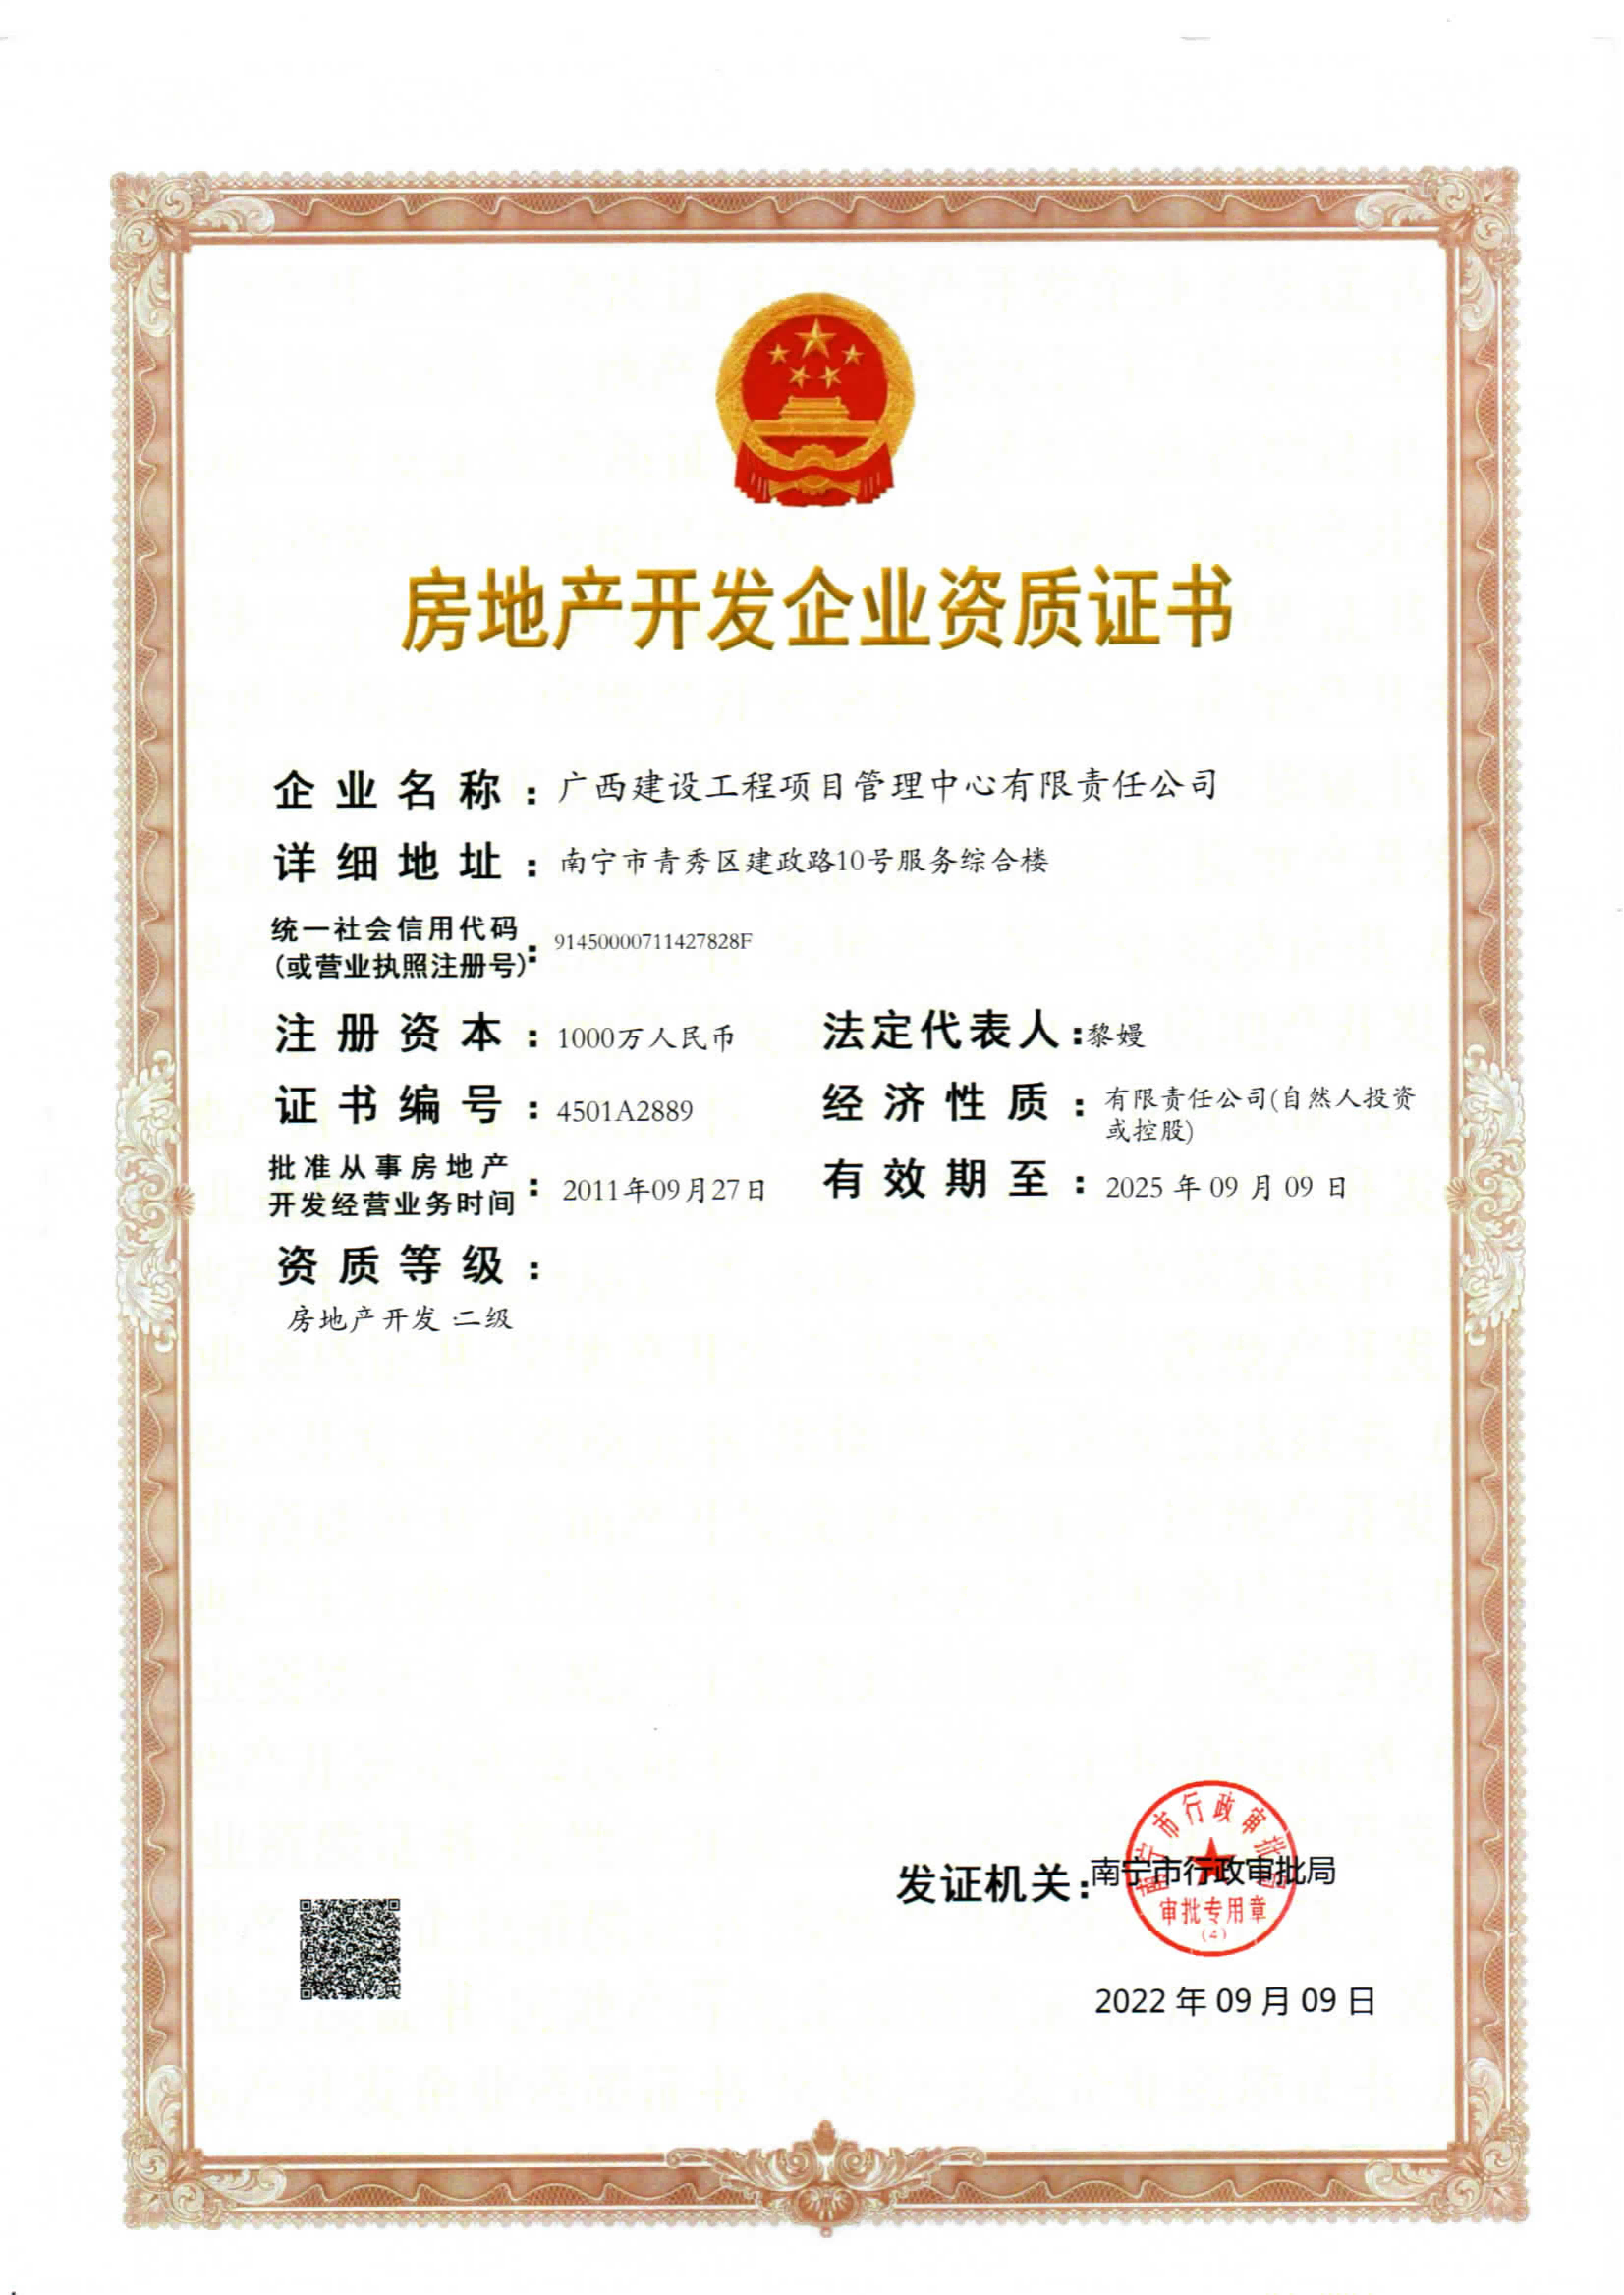 房地产开发资质证书（最新2025年9月9日到期）(1).png